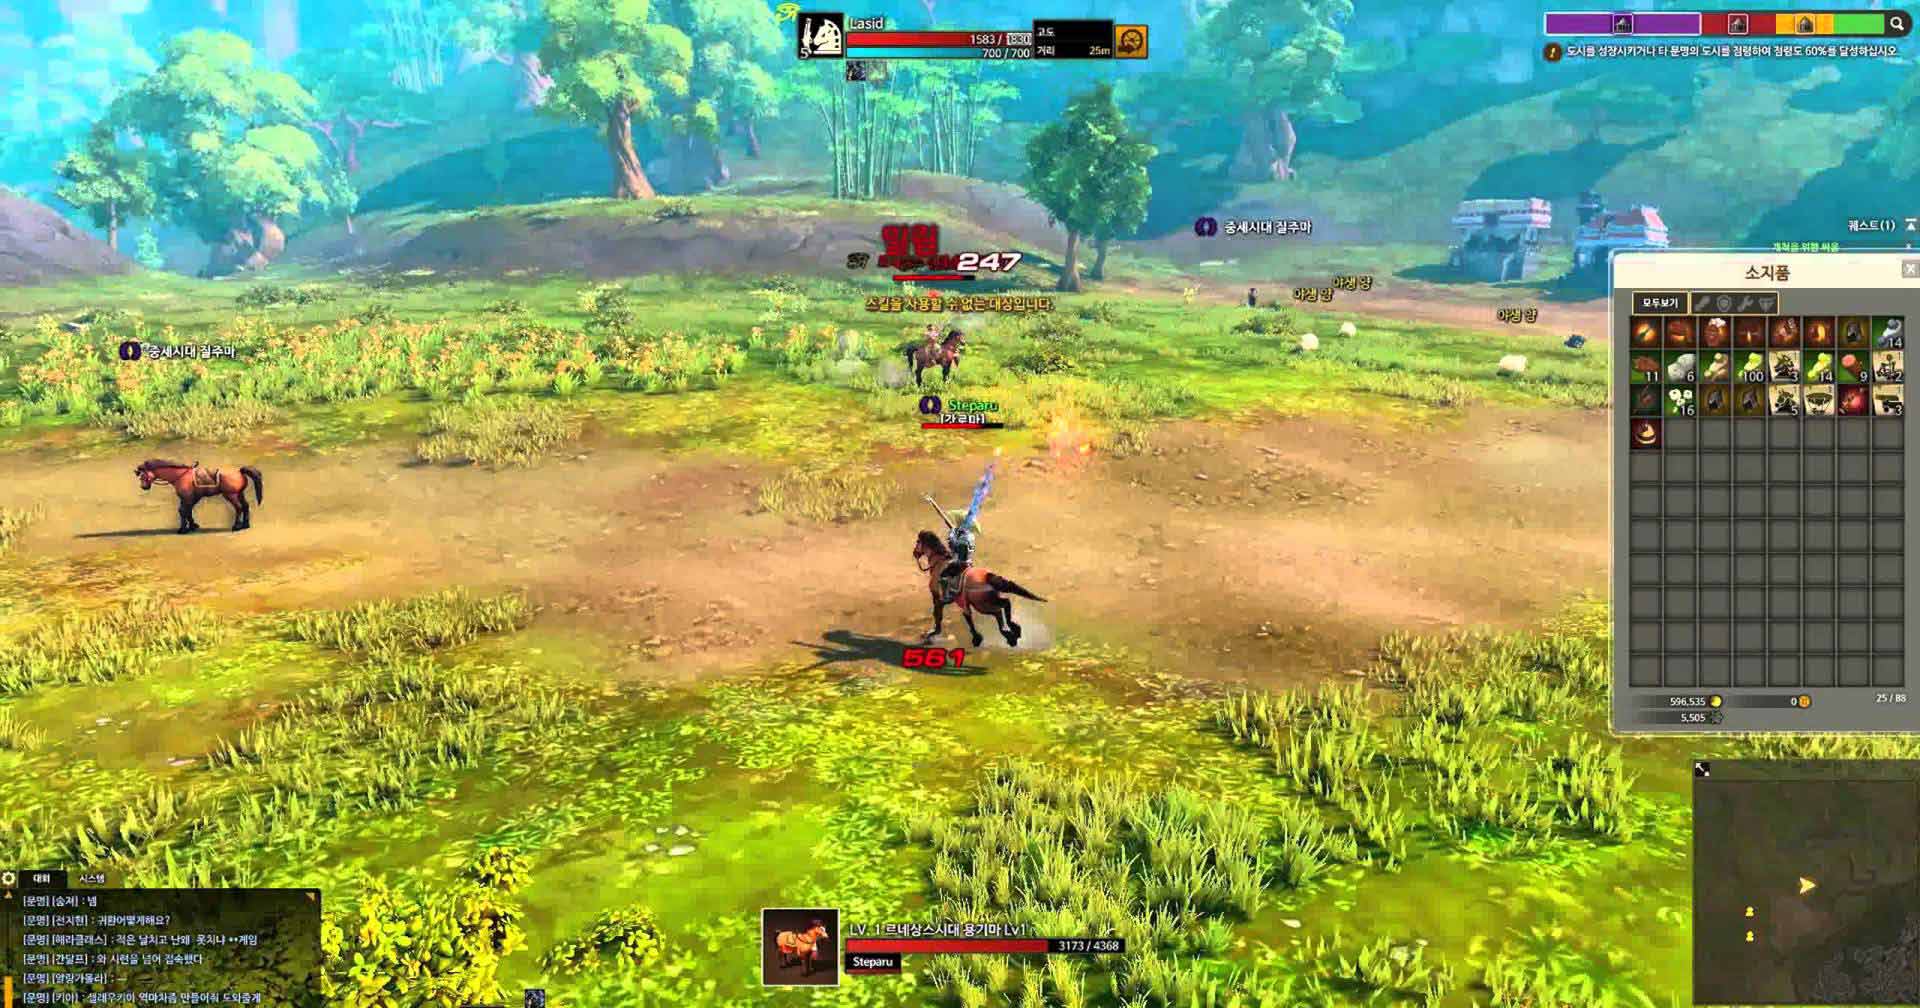 Скриншот к игре Civilization Online